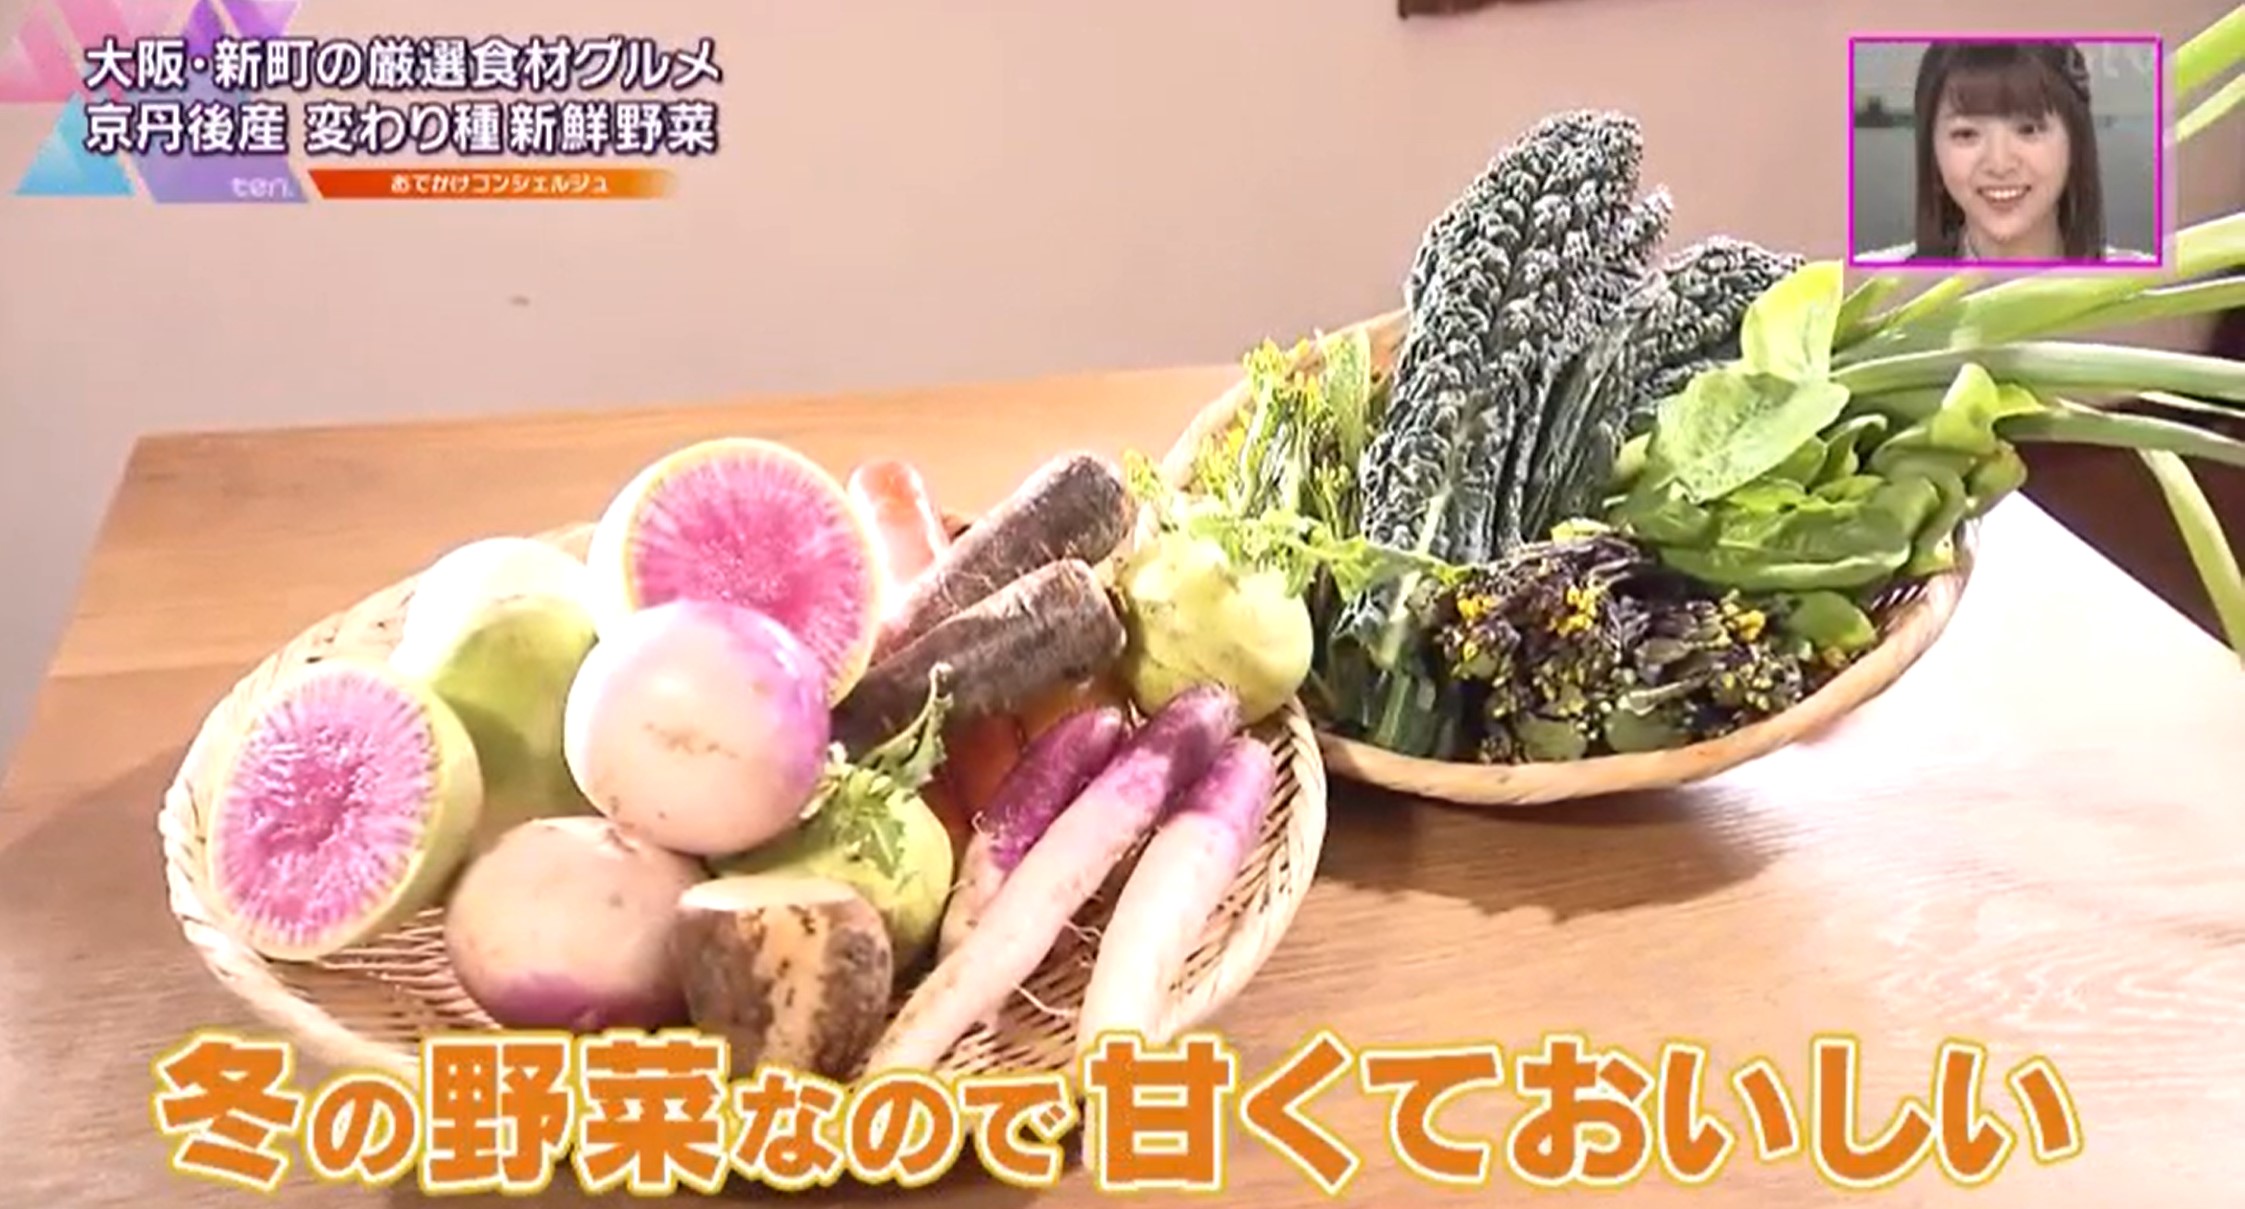 小西屋で使う京丹後産の野菜